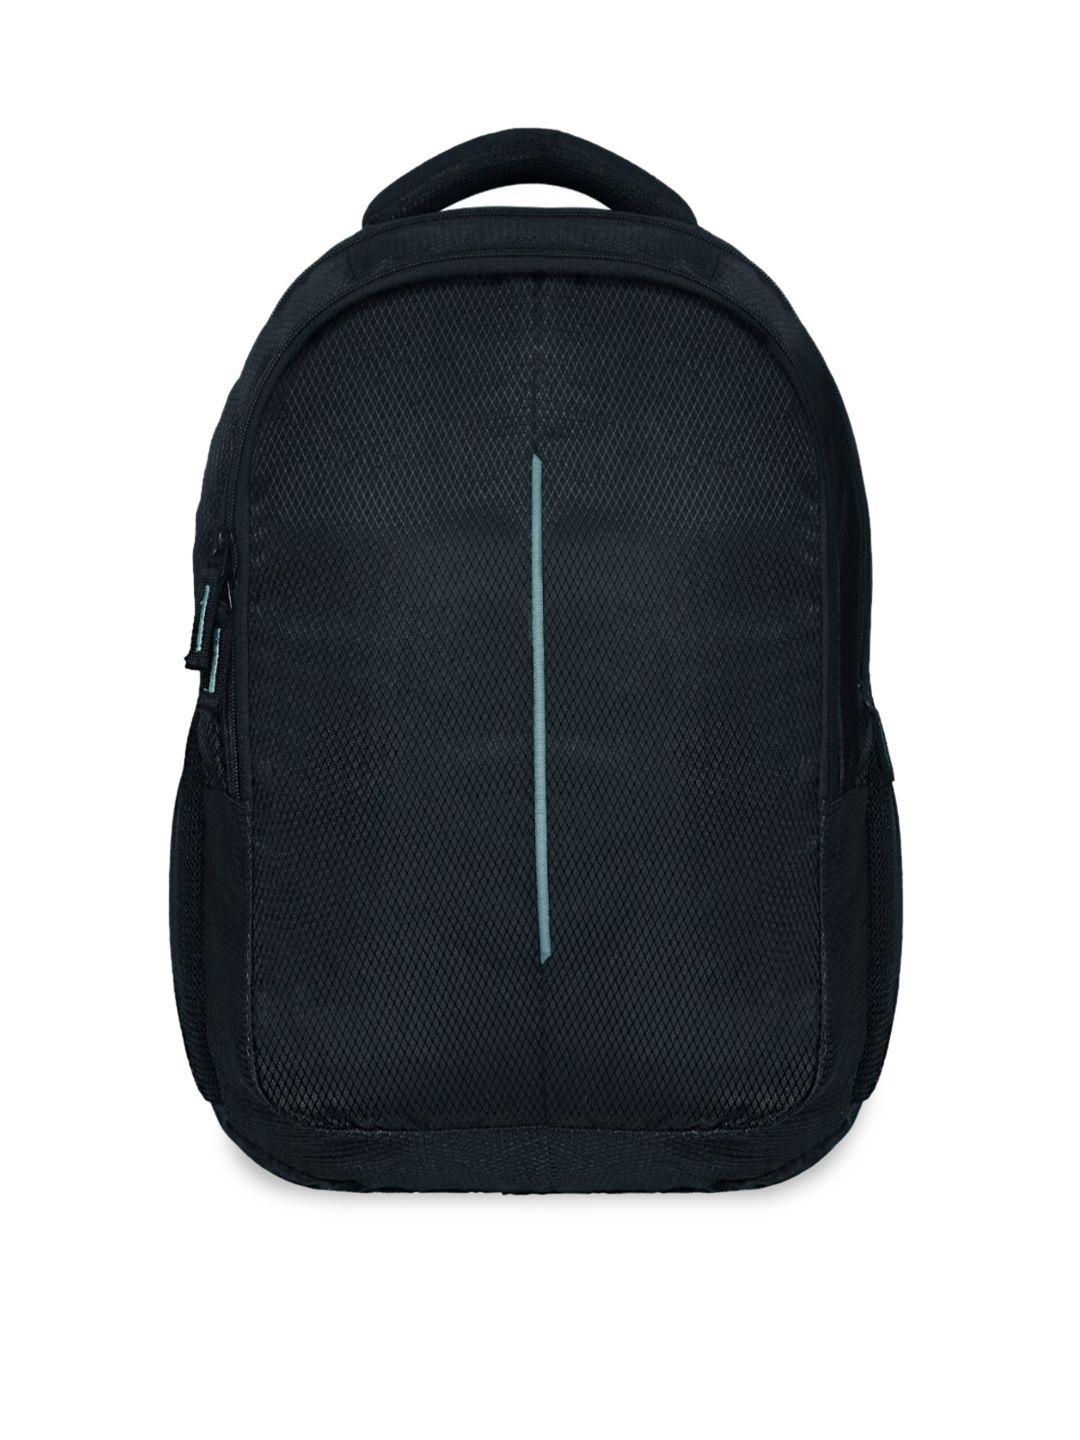 lookmuster unisex grey & black backpack